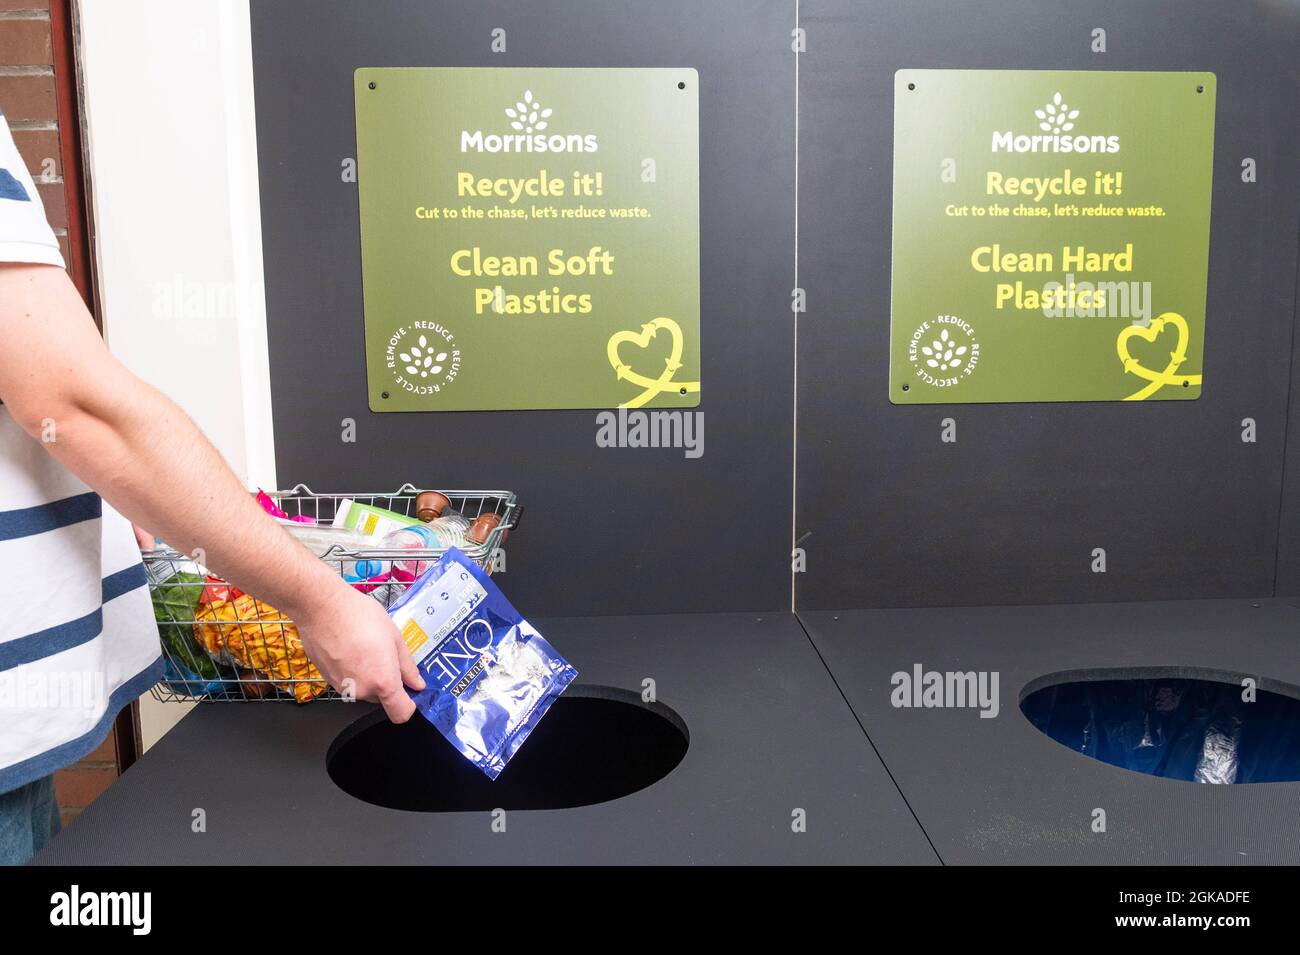 UTILISATION ÉDITORIALE UNIQUEMENT points de vue généraux d'un nouveau point  de collecte de recyclage à Morrisons, alors que le supermarché a mis à  l'essai le premier magasin britannique « zéro déchet »,